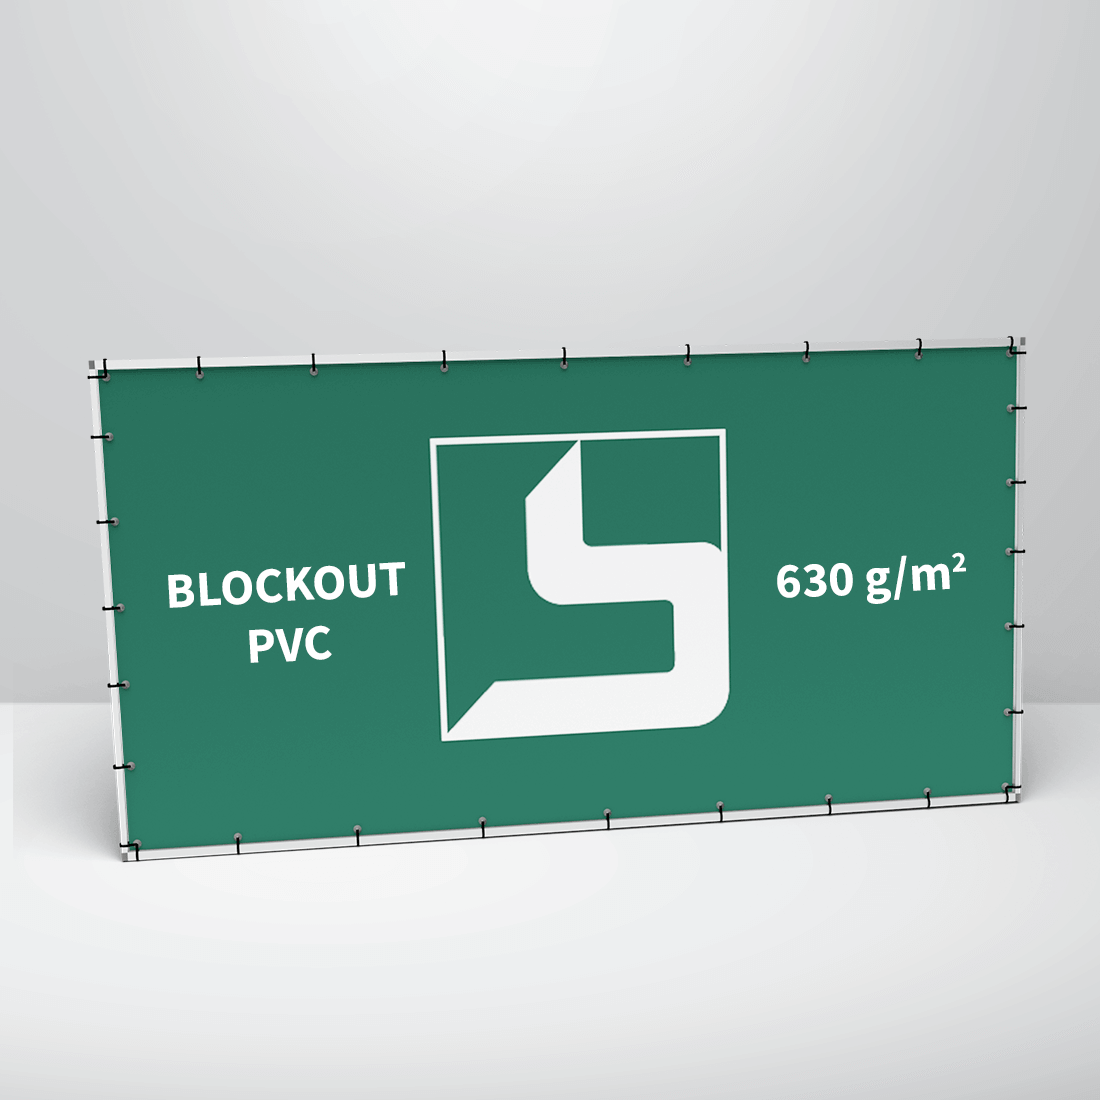 Transparent: Blockout PVC, 610 g/m2